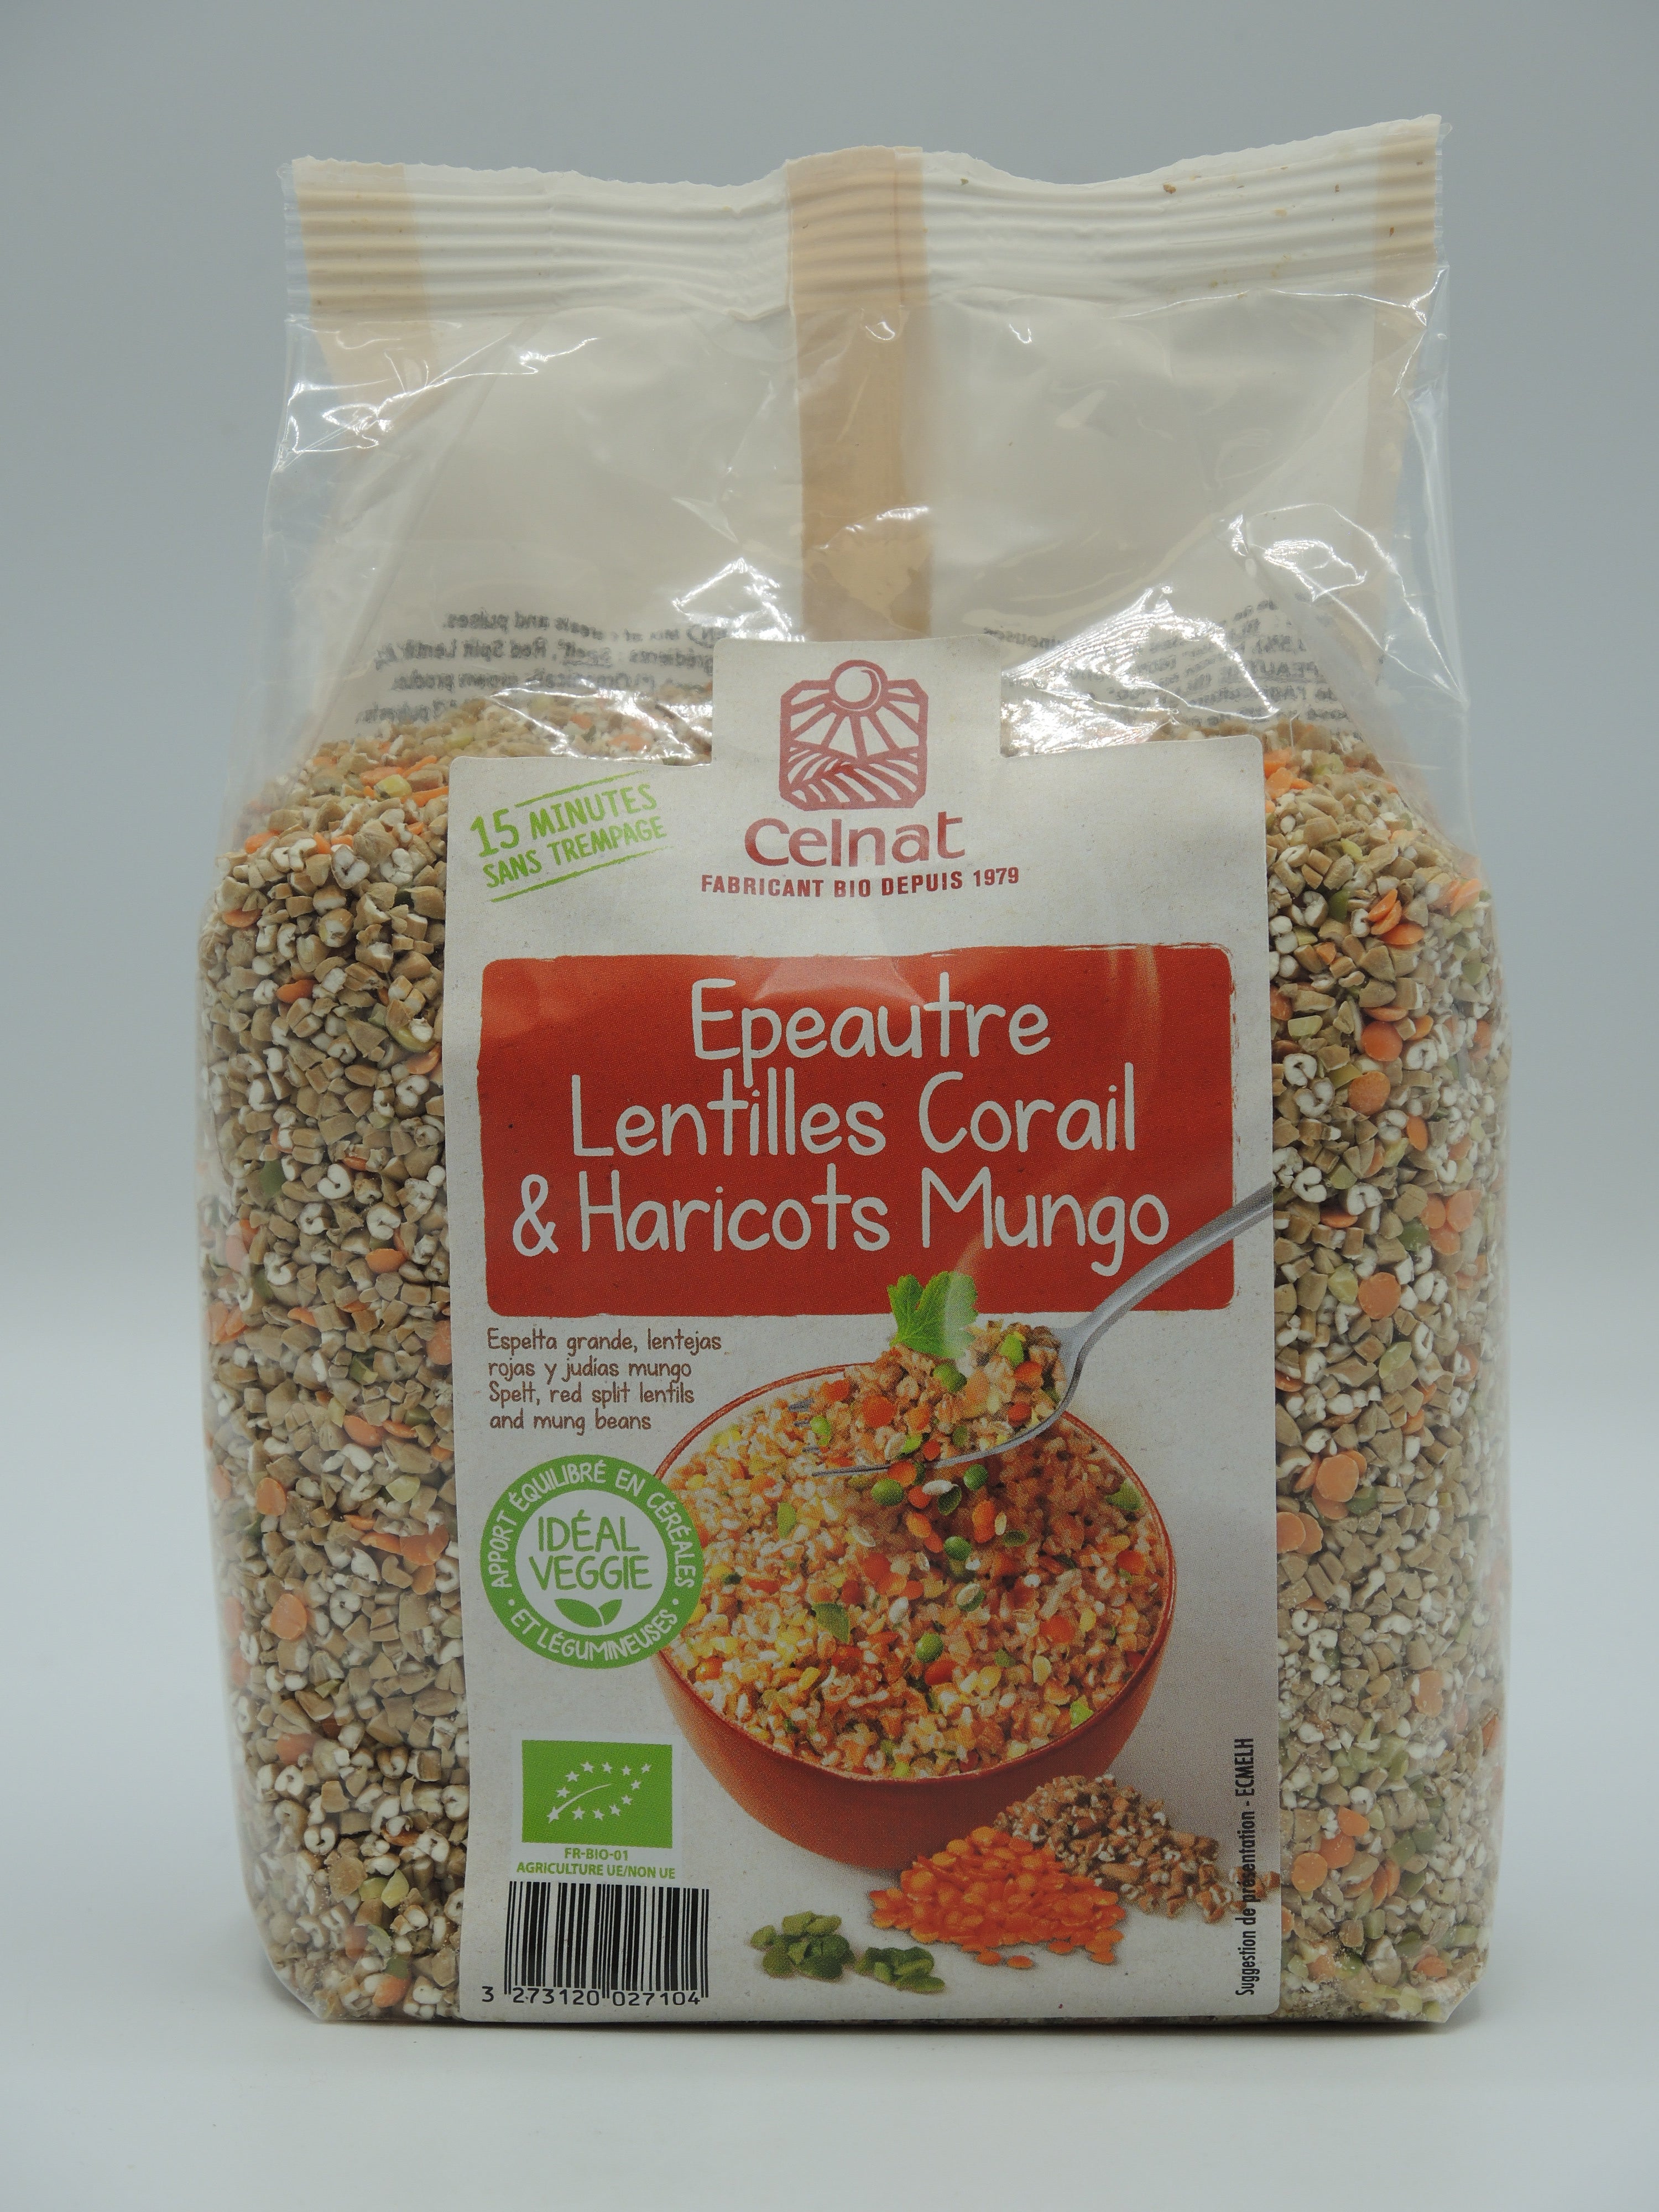 Lentilles Corail - Celnat